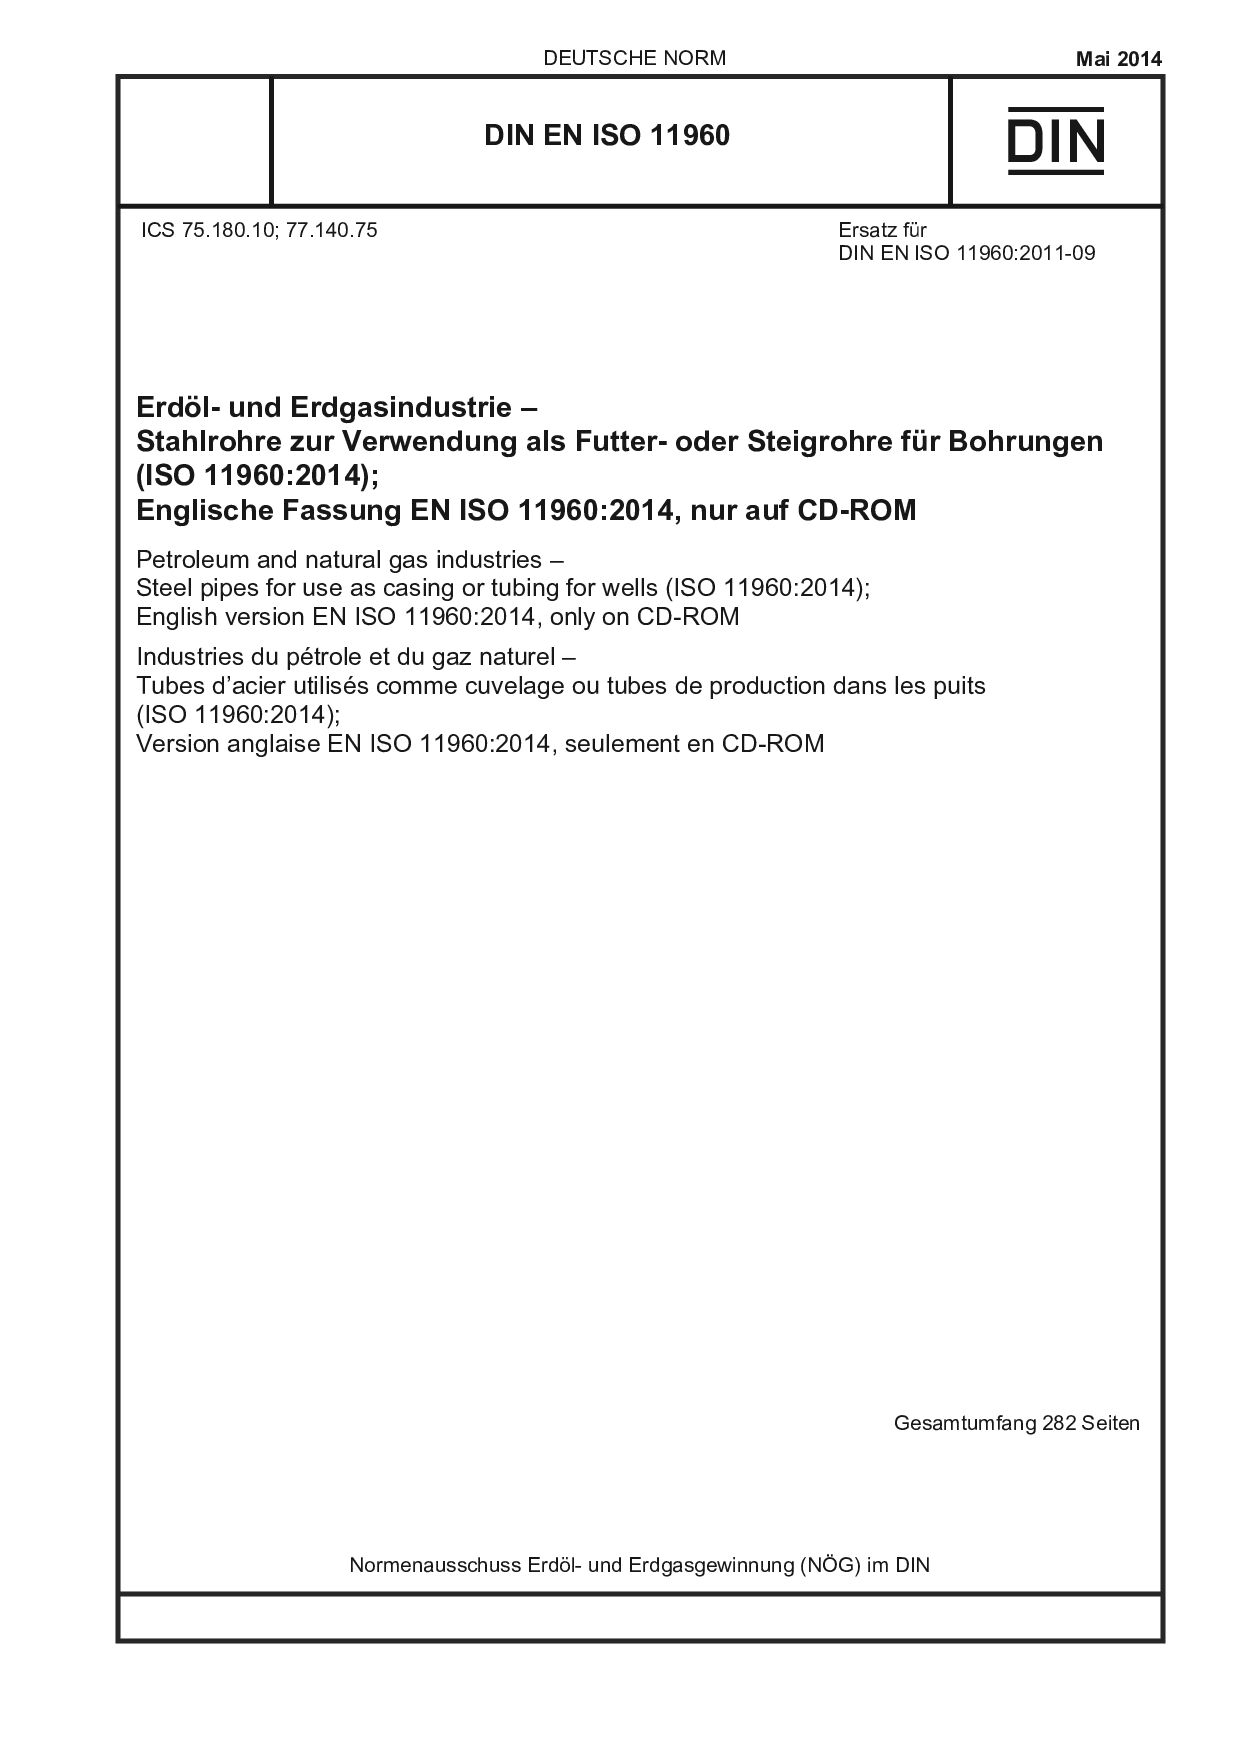 DIN EN ISO 11960:2014